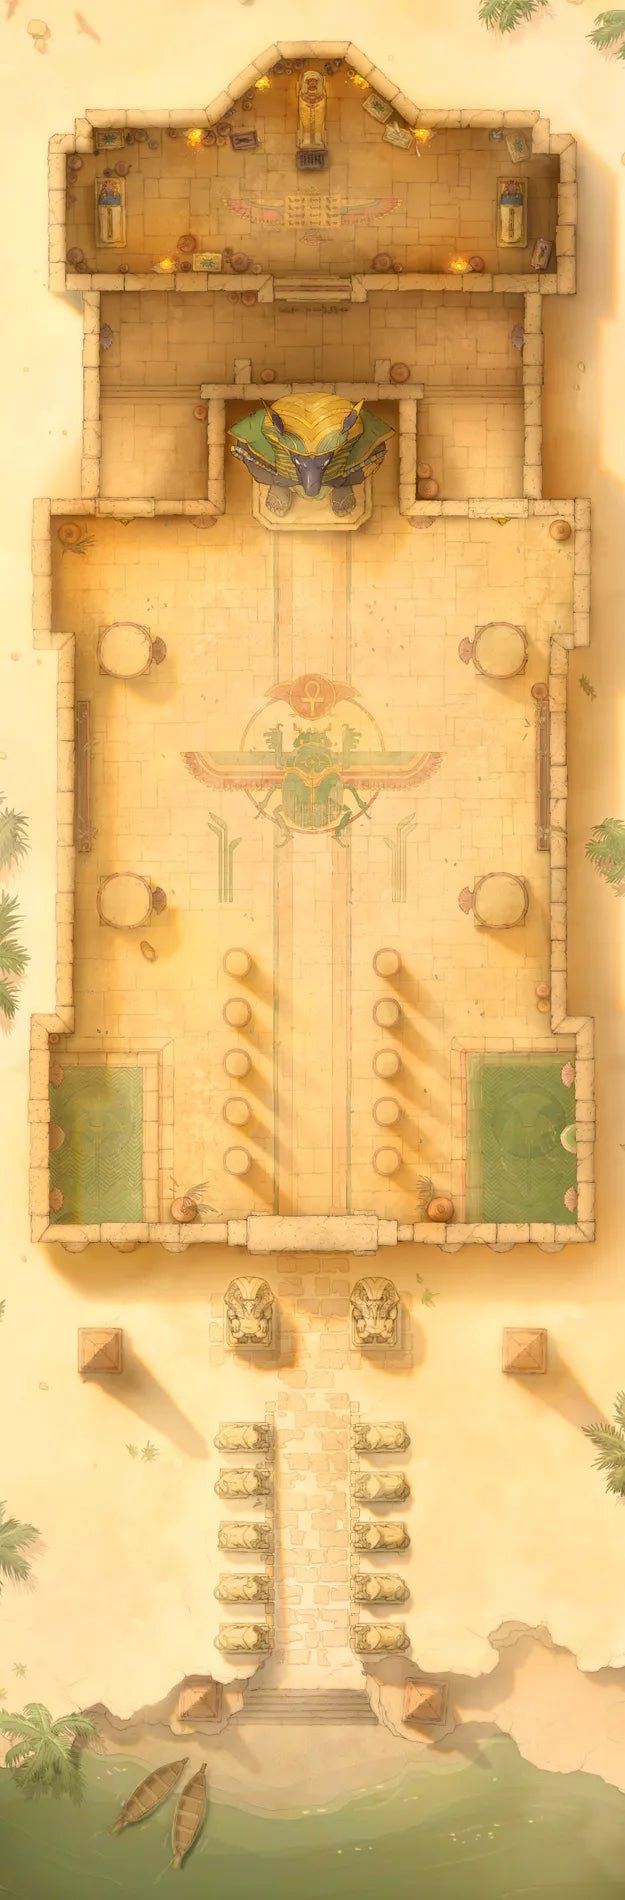 Pharaoh's Tomb Map - afba69d022c2926722bb321211358e6e